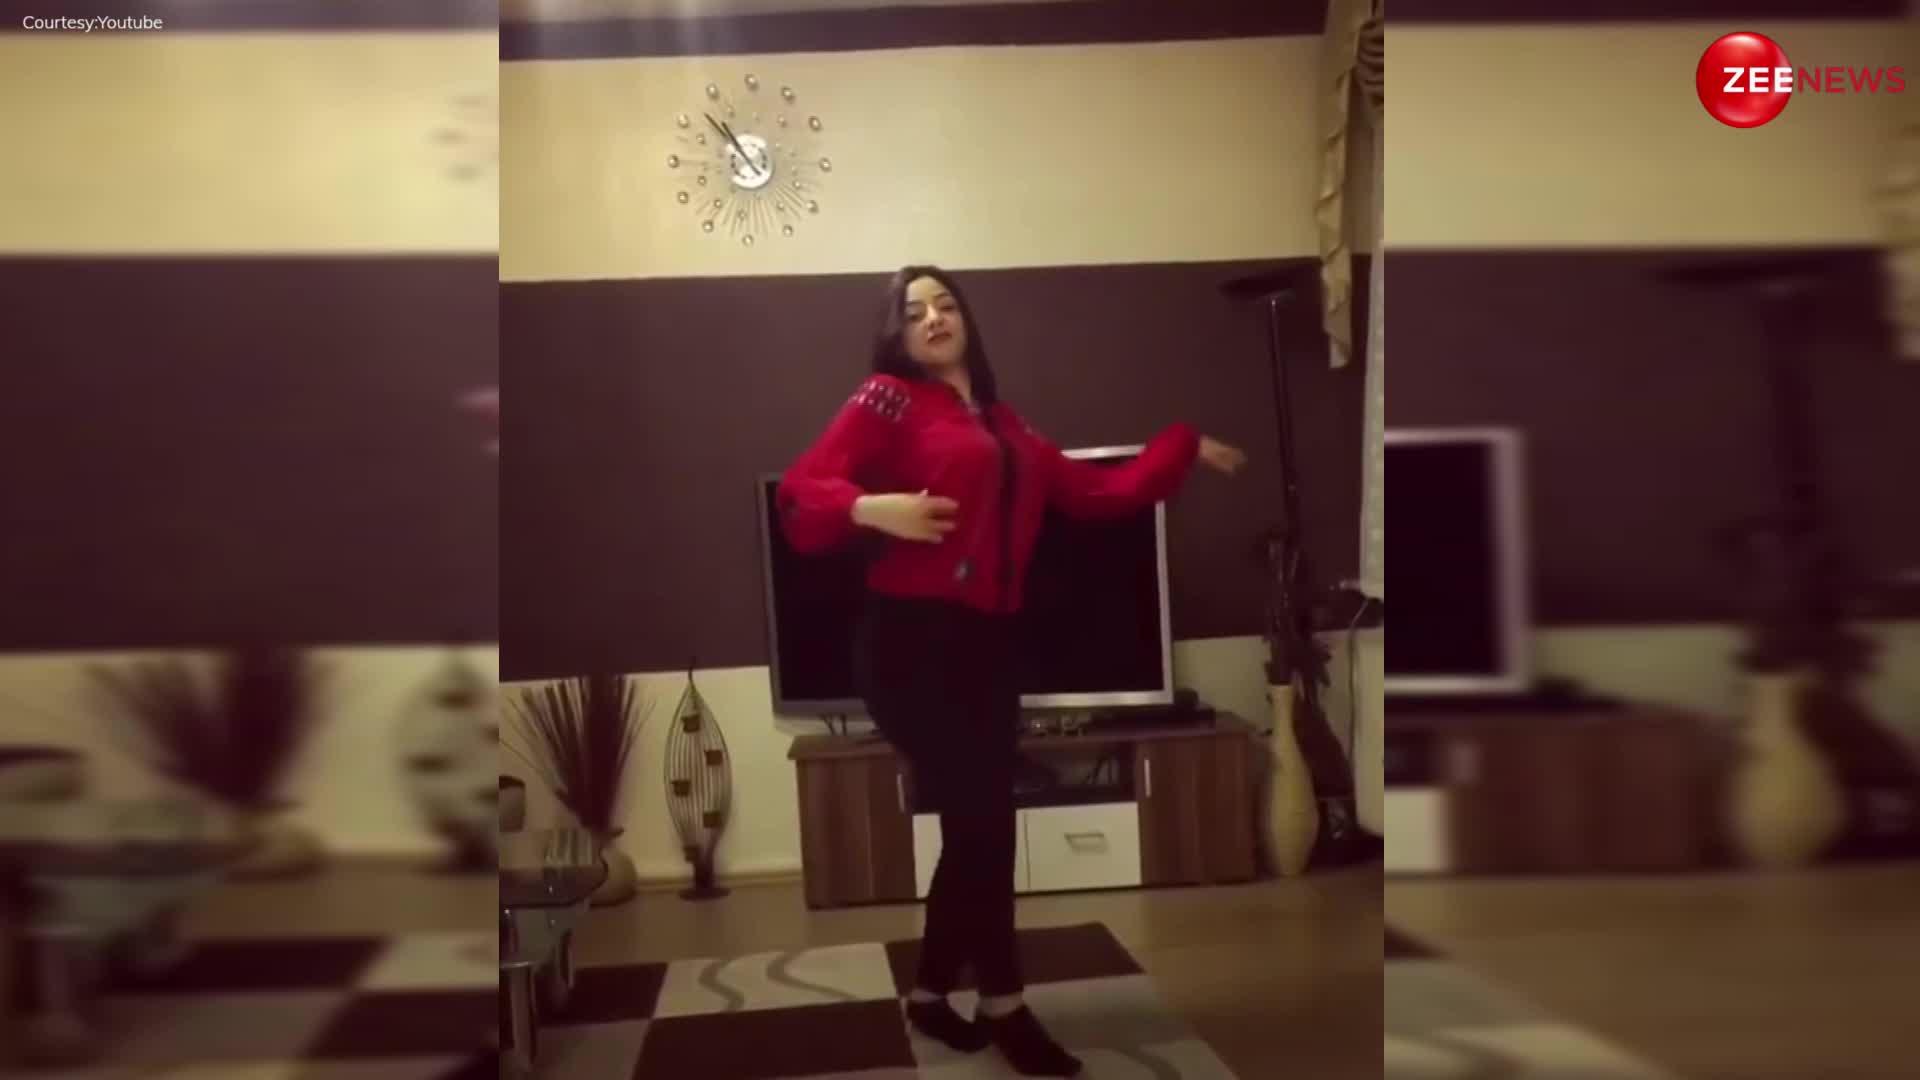 Viral: पाकिस्तानी लड़की ने 'तू चीज बड़ी है मस्त मस्त' पर किया सेक्सी डांस, देखने वाले के लोगों के उड़े होश